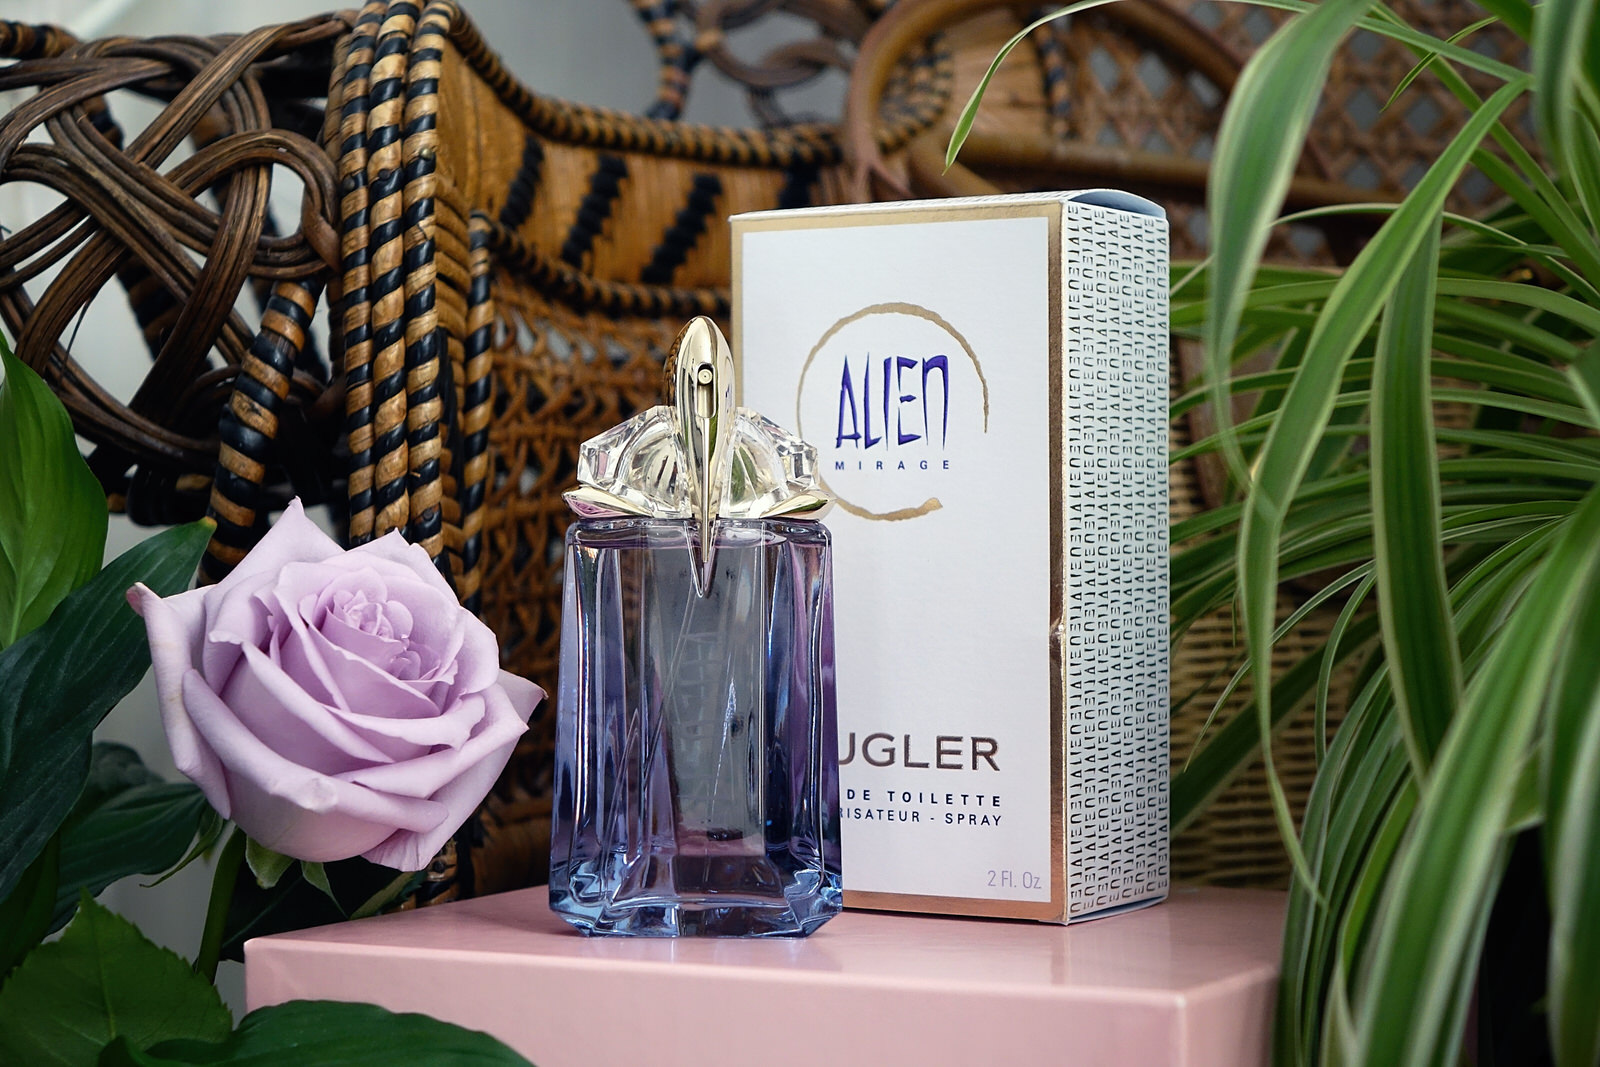 Le nouveau parfum Alien Mirage de Mugler